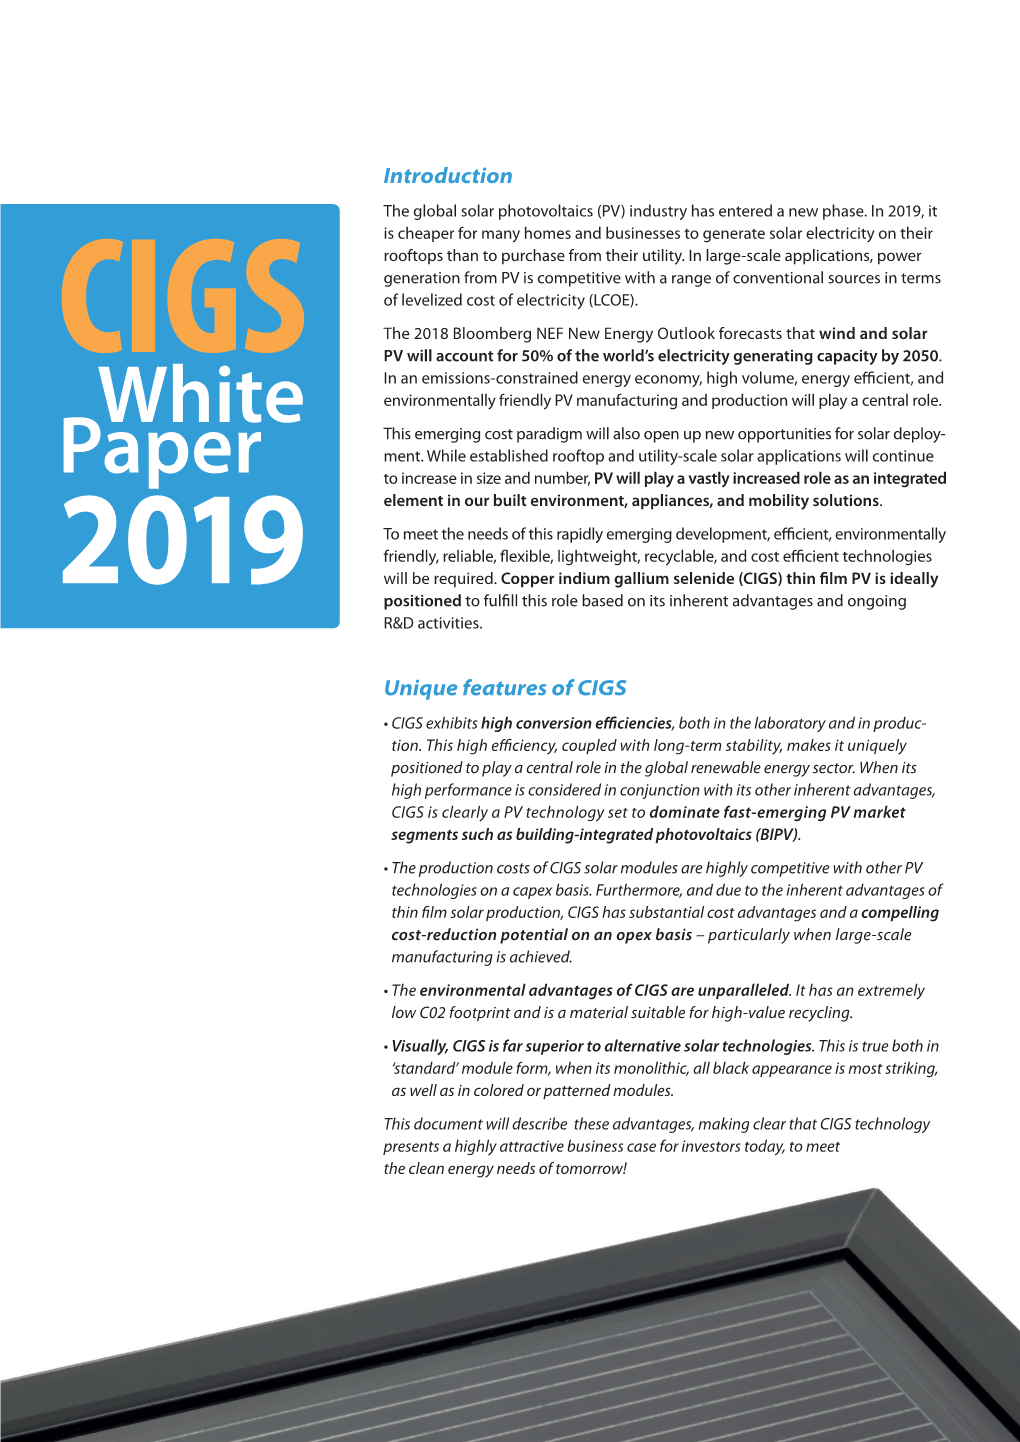 CIGS White Paper (2019)(Pdf, 7MB)